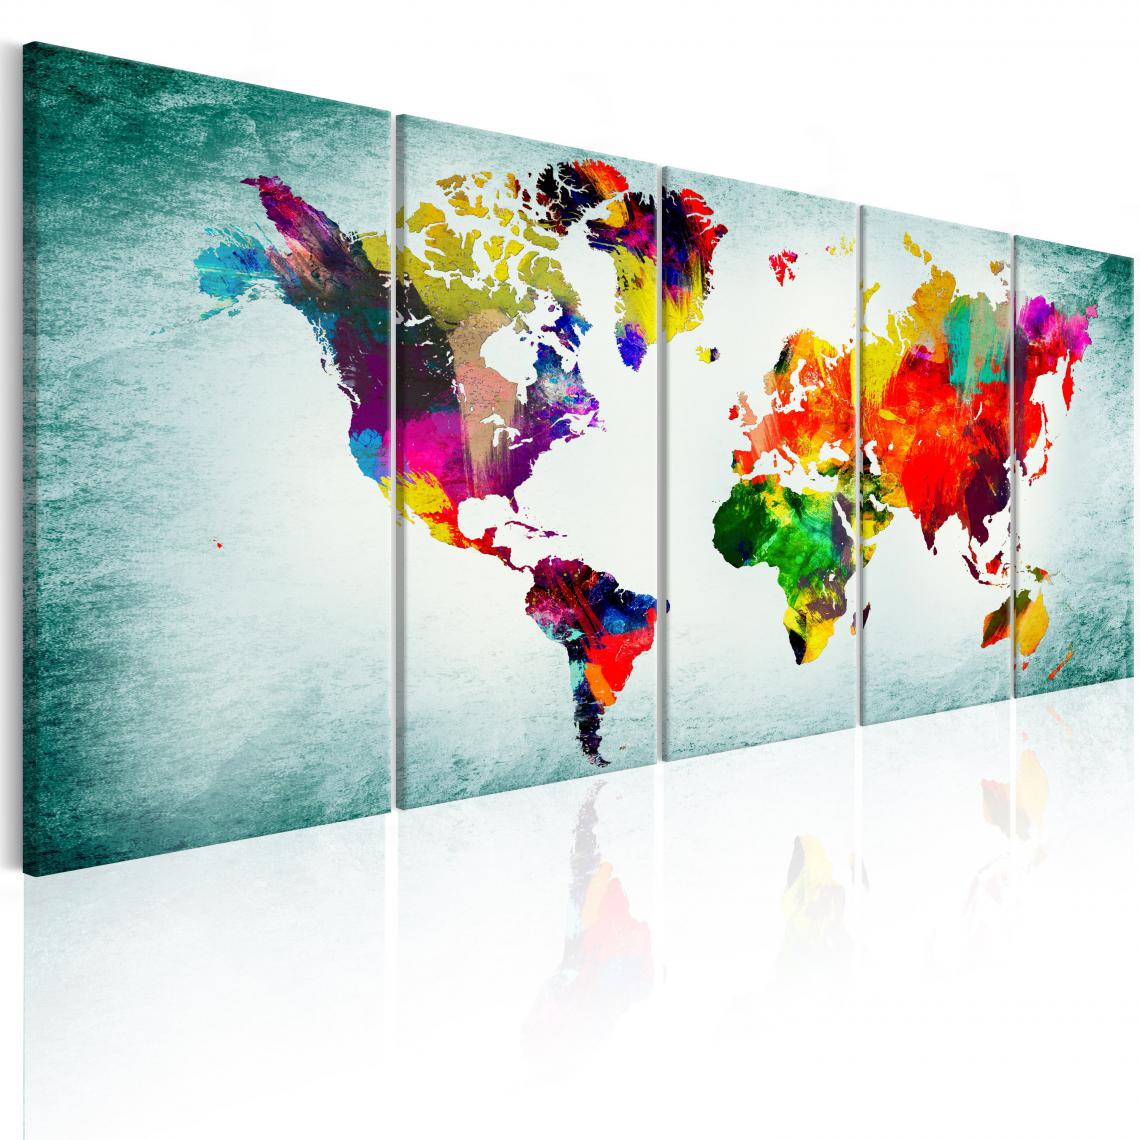 Decoshop26 - Tableau sur toile en 5 panneaux décoration murale image imprimée cadre en bois à suspendre Carte du monde : vignette verte 200x80 cm 11_0004609 - Tableaux, peintures